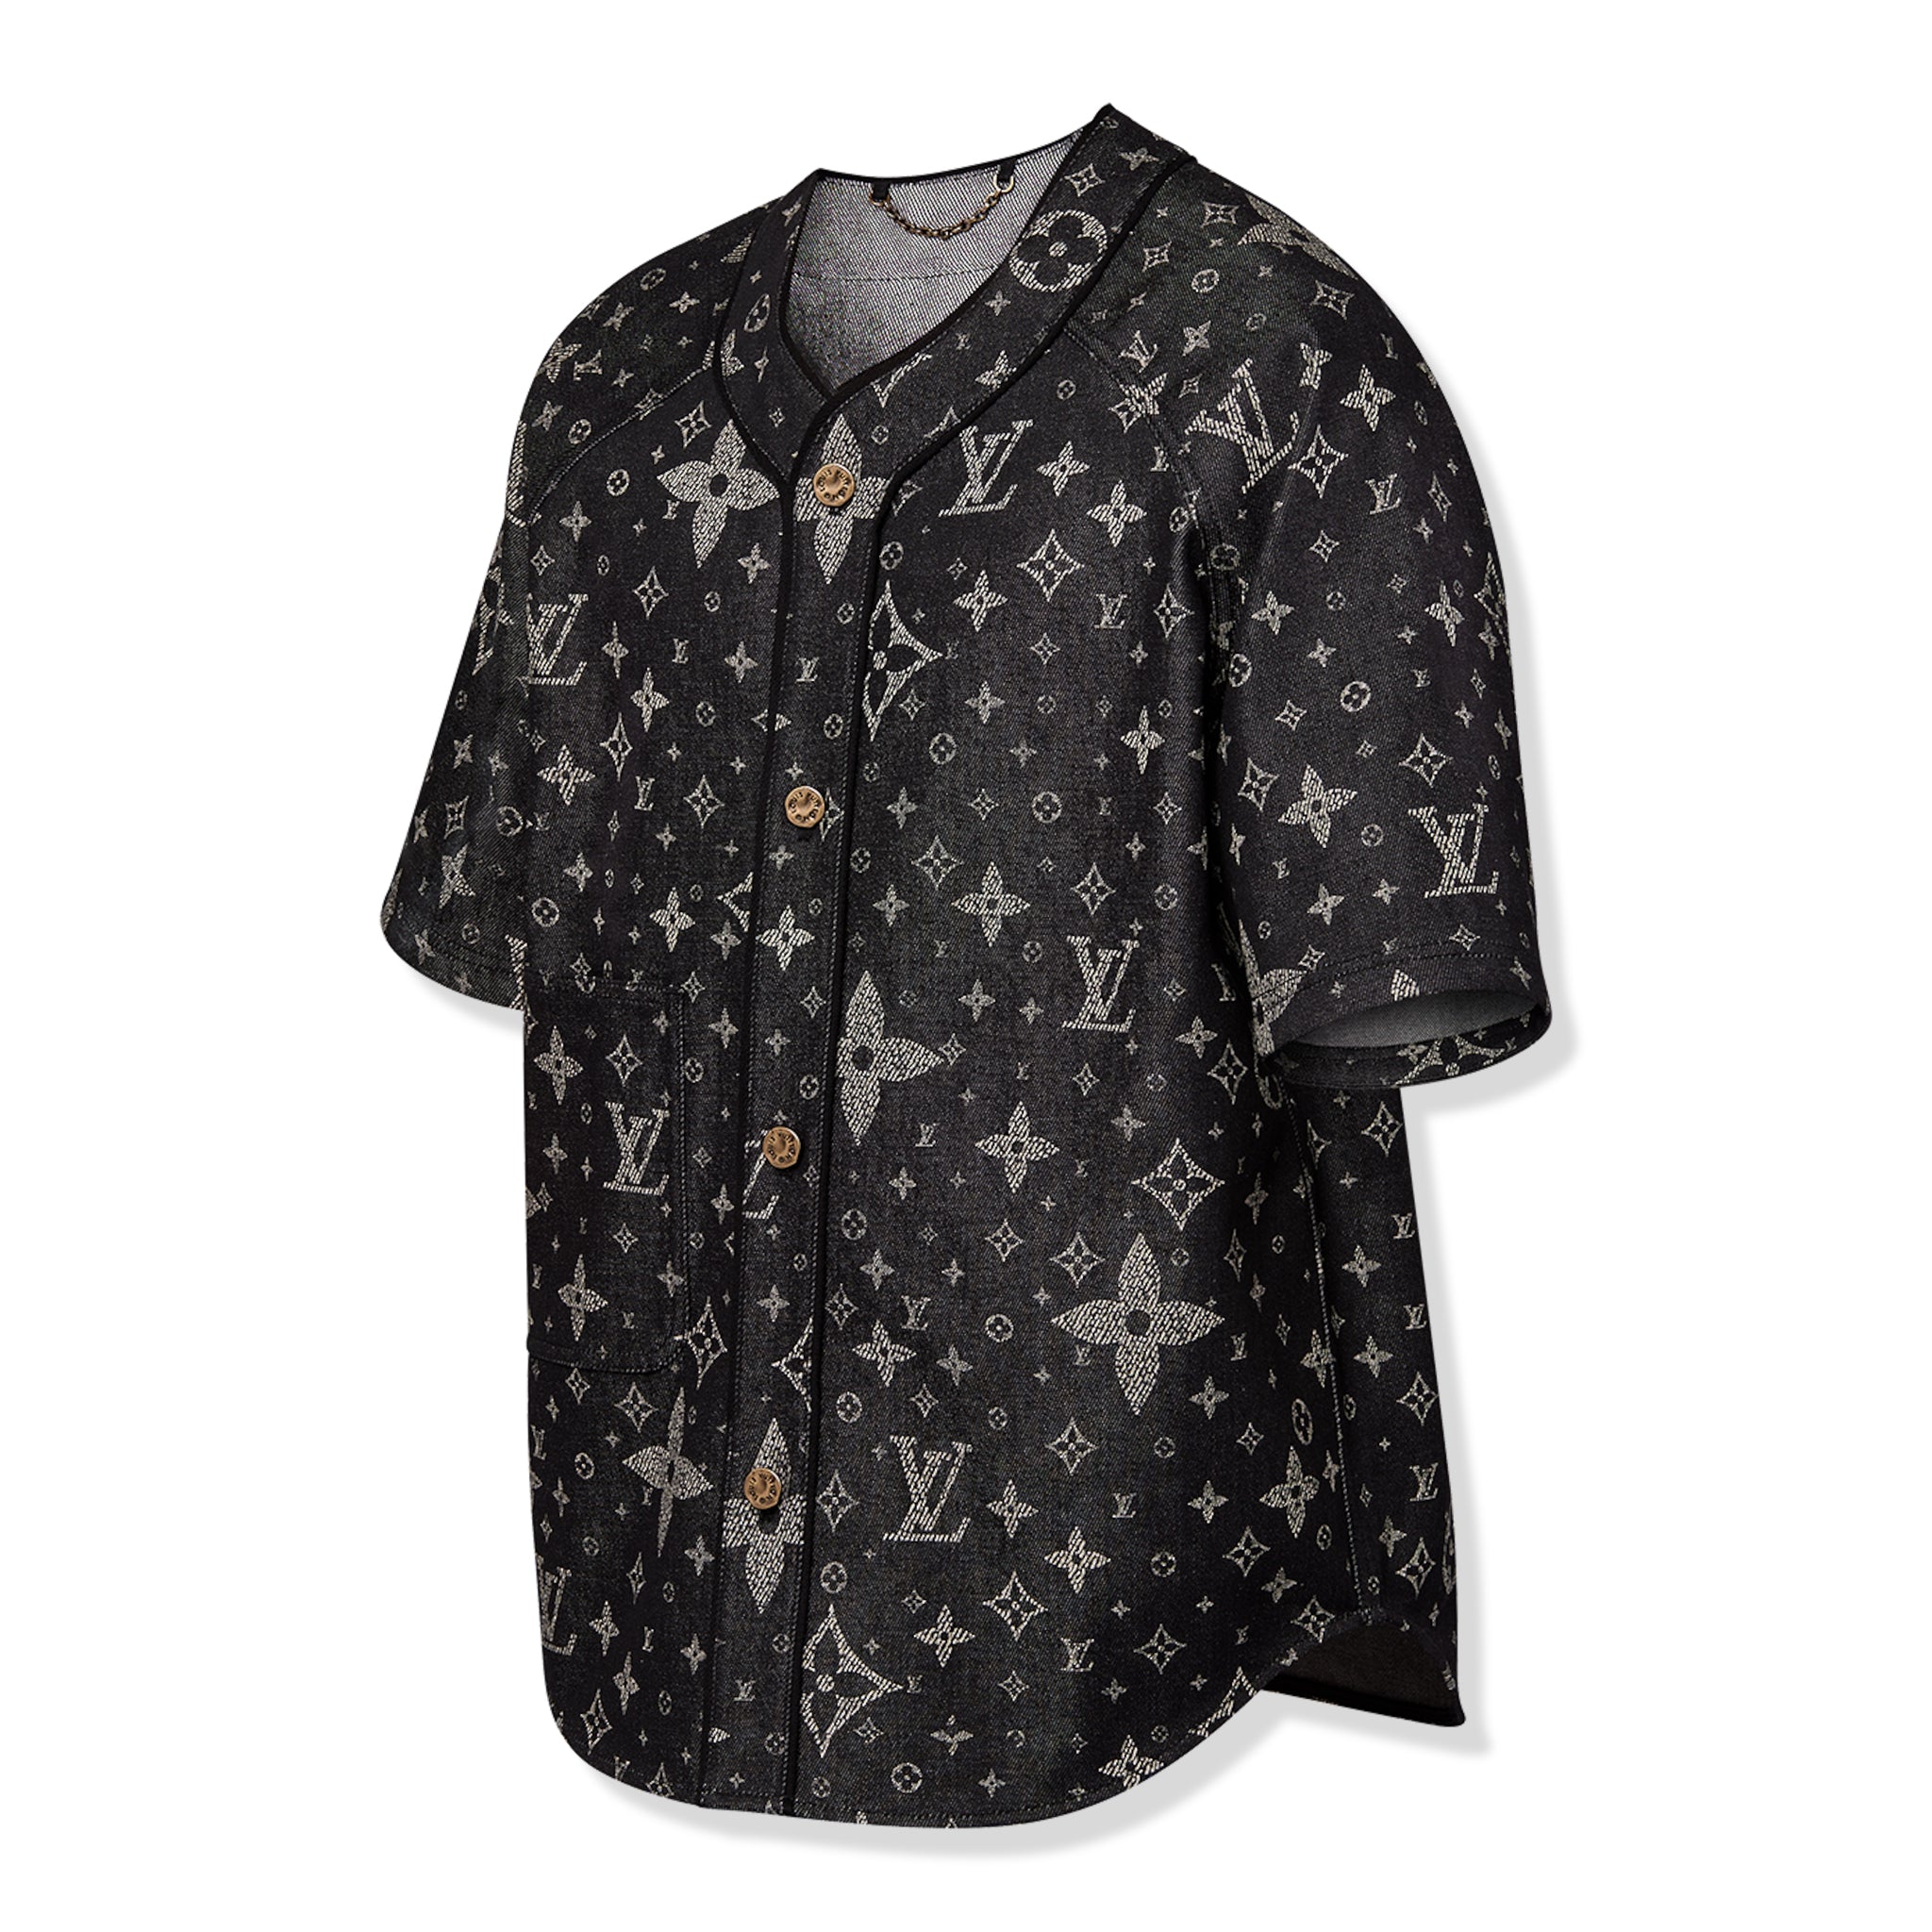 Side view of Louis Vuitton Monogram Denim Black Baseball Shirt NVPROD4830078V